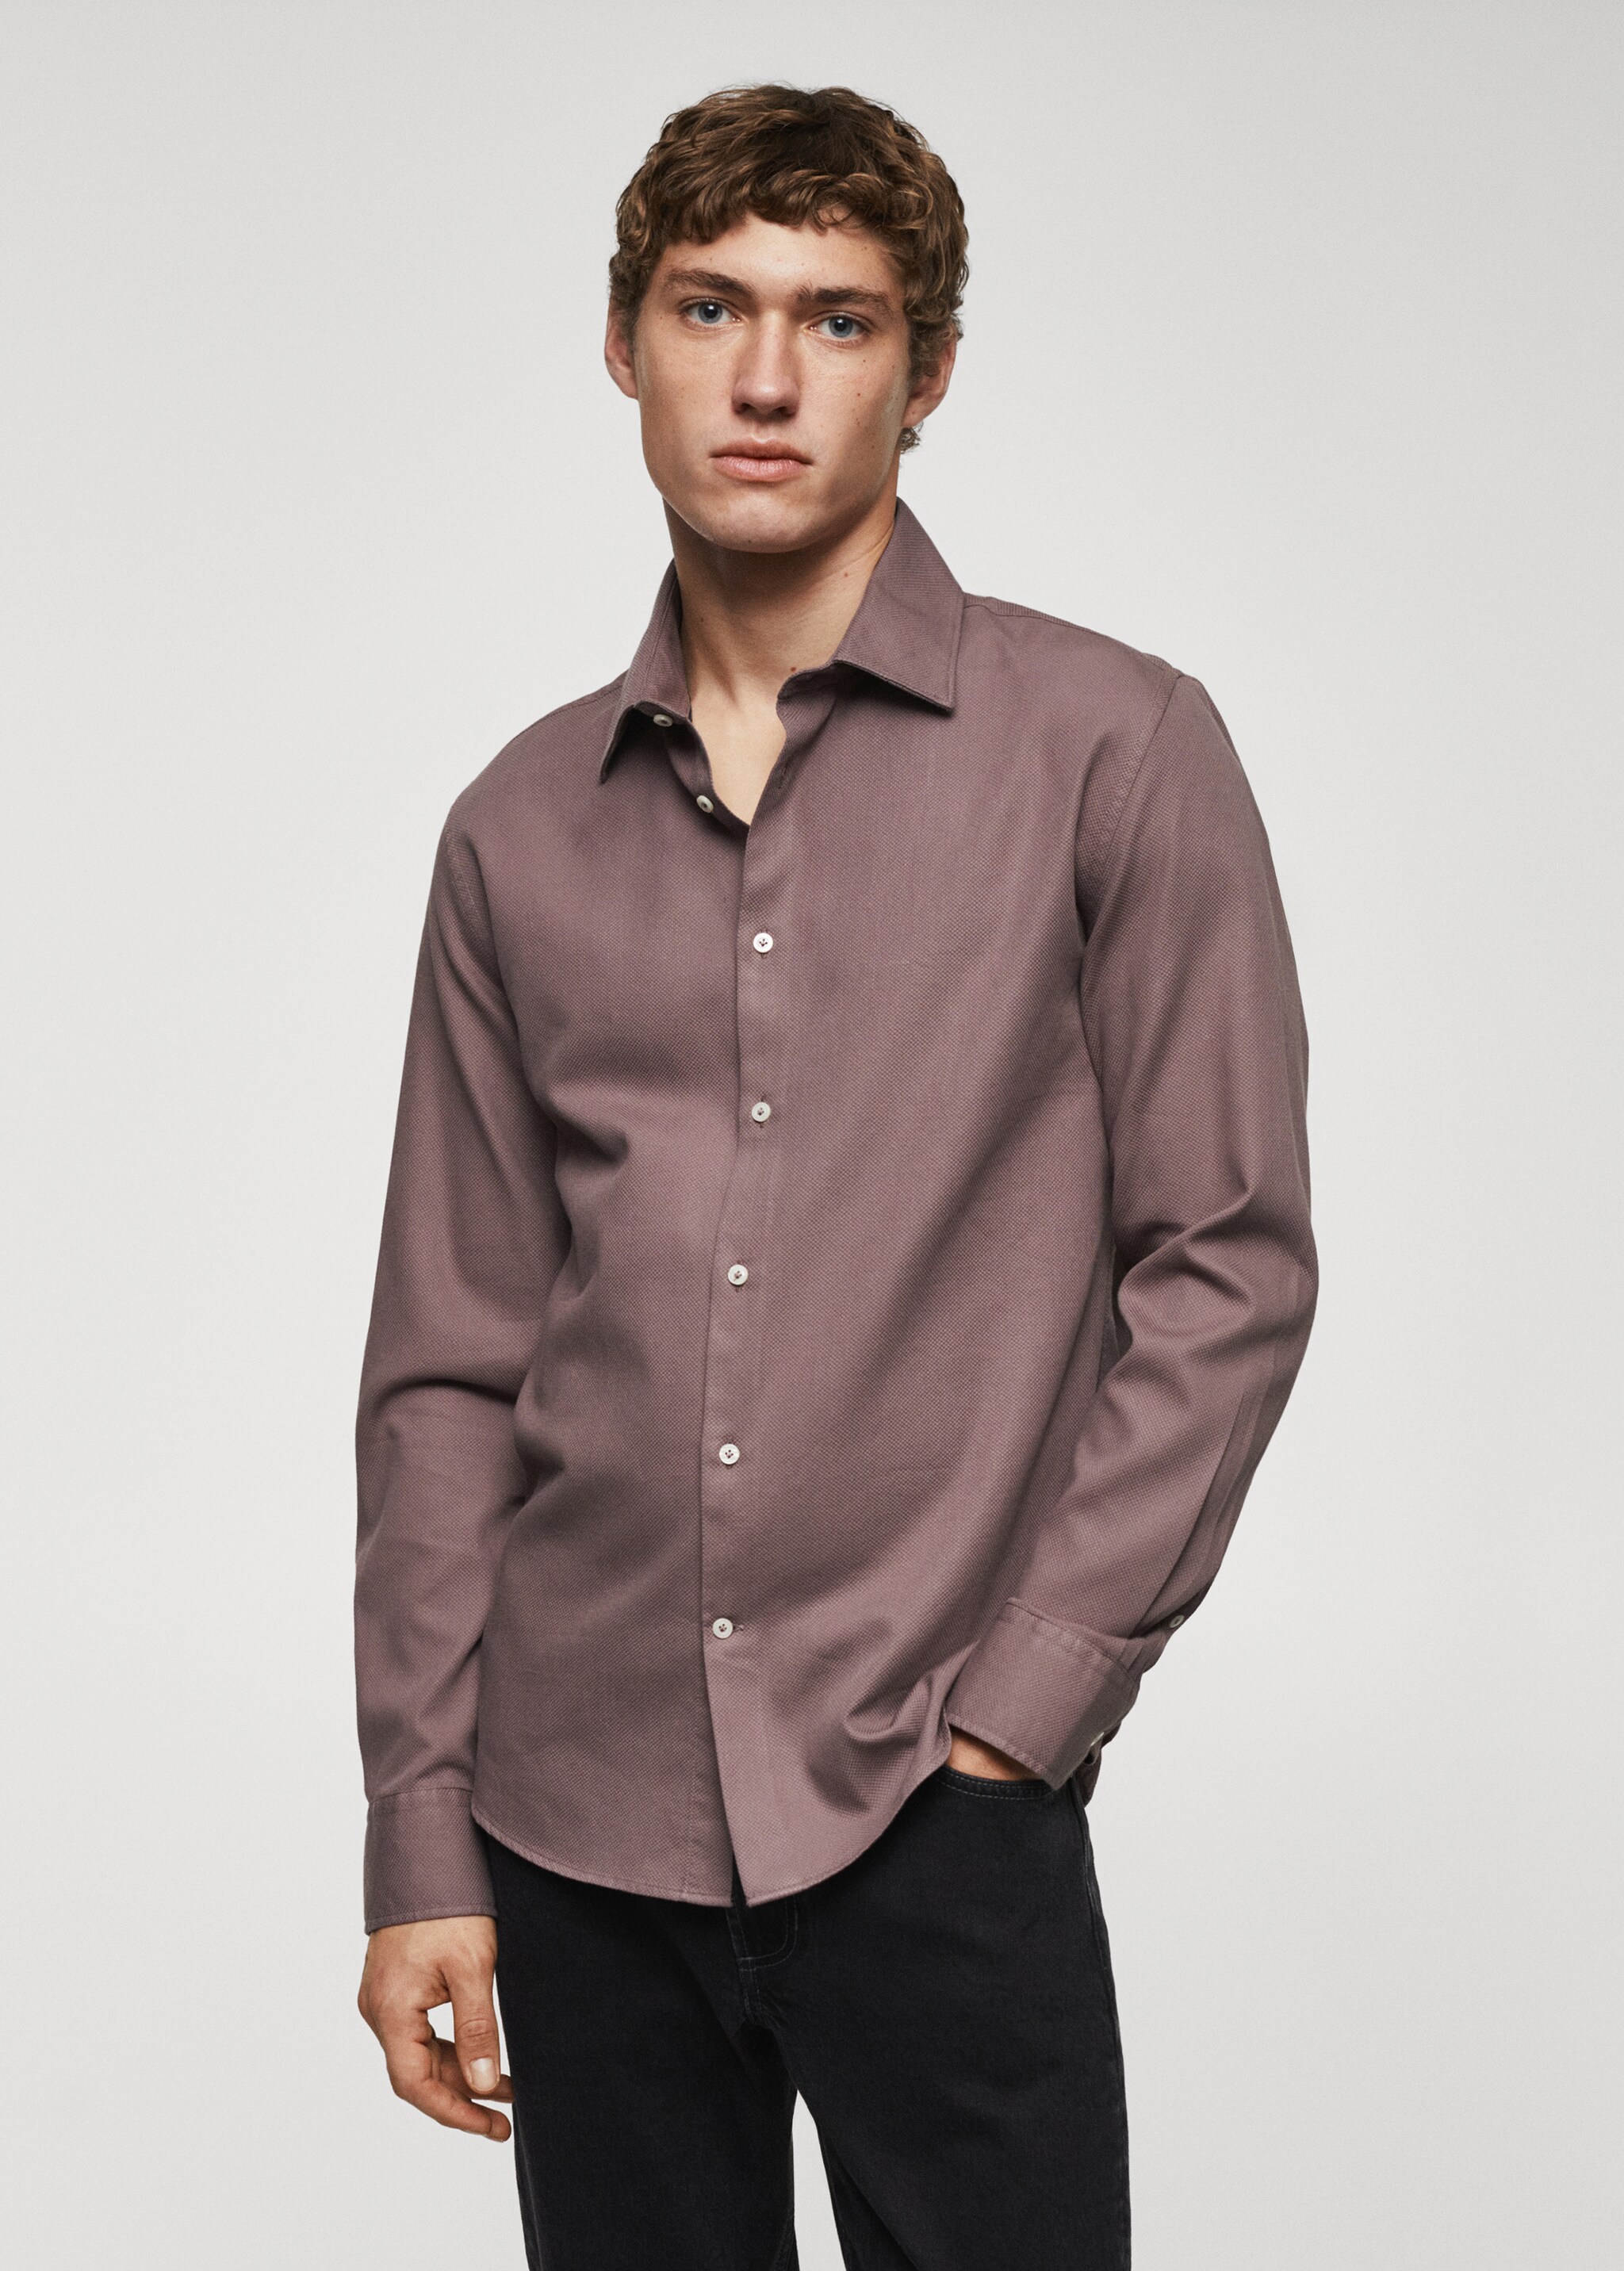 Slim-fit cotton structured shirt - Medium plane